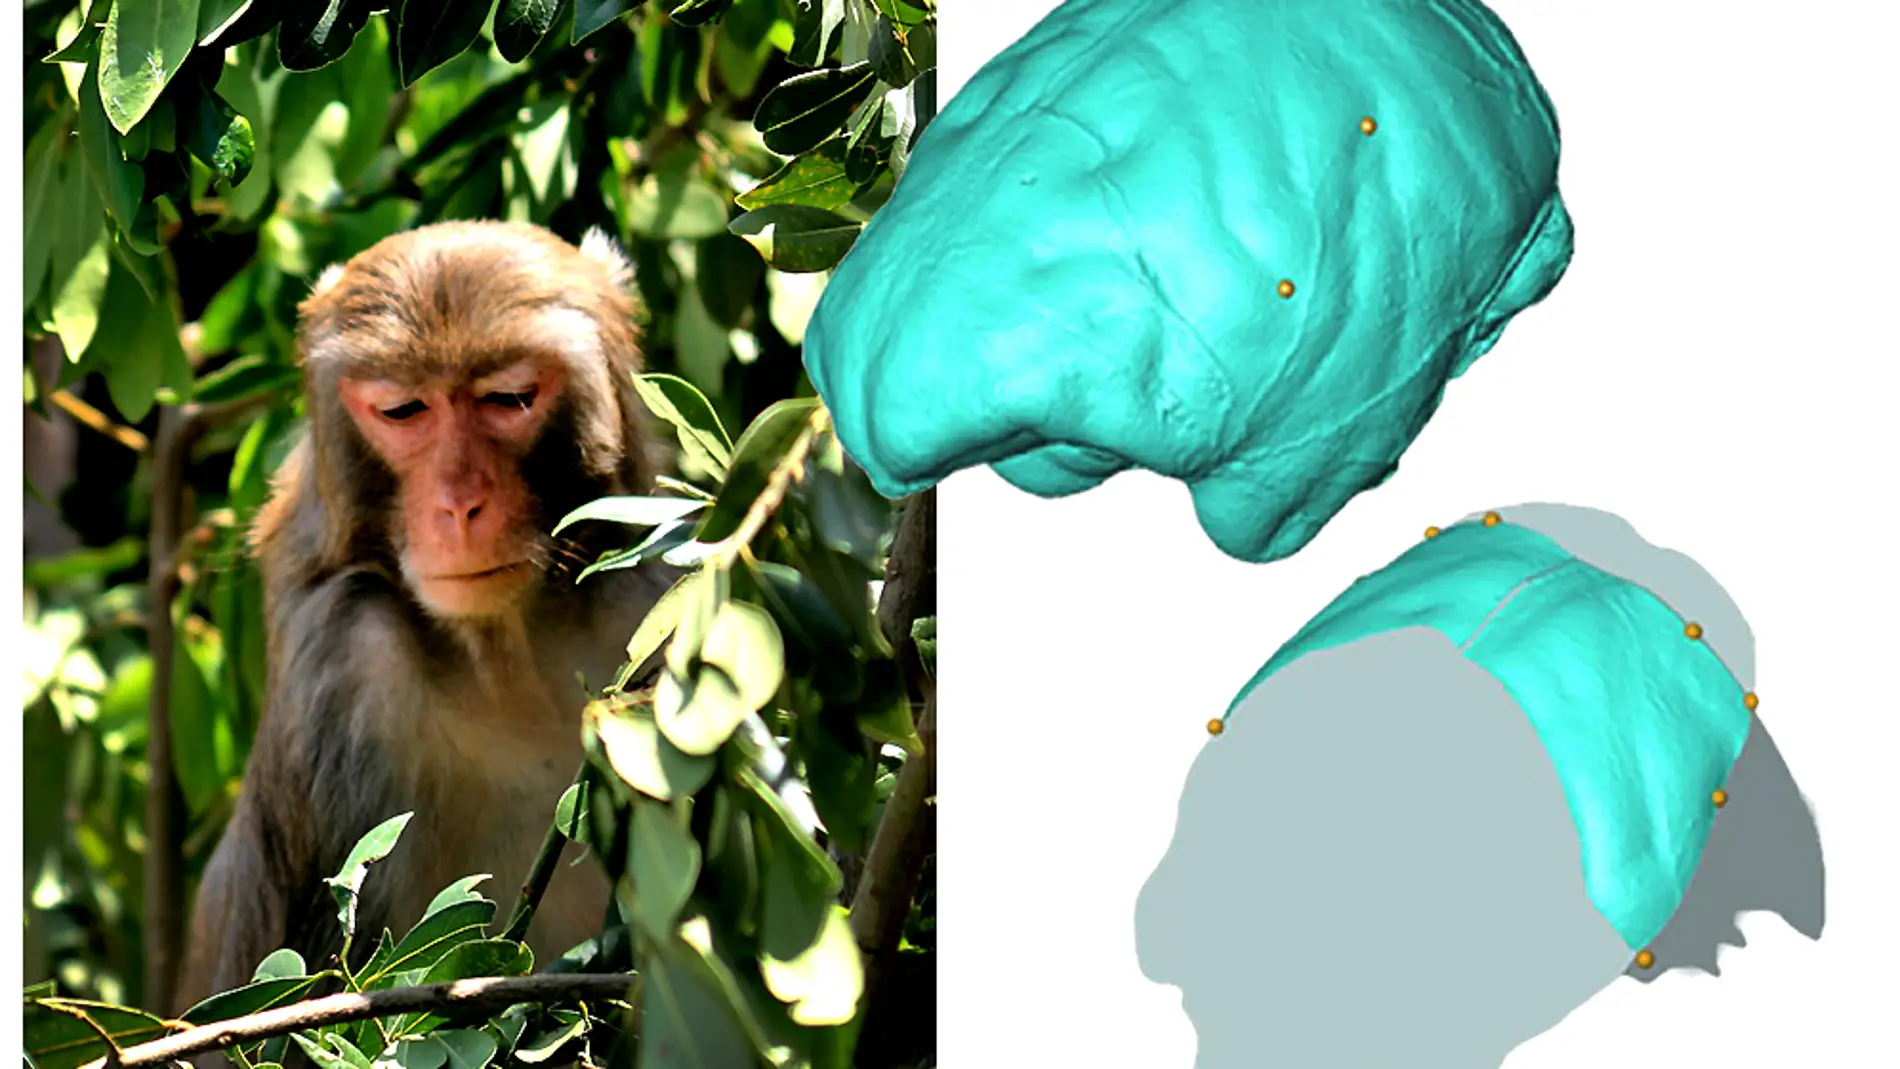 Analizan la anatomia parietal del cerebro de los monos del viejo mundo